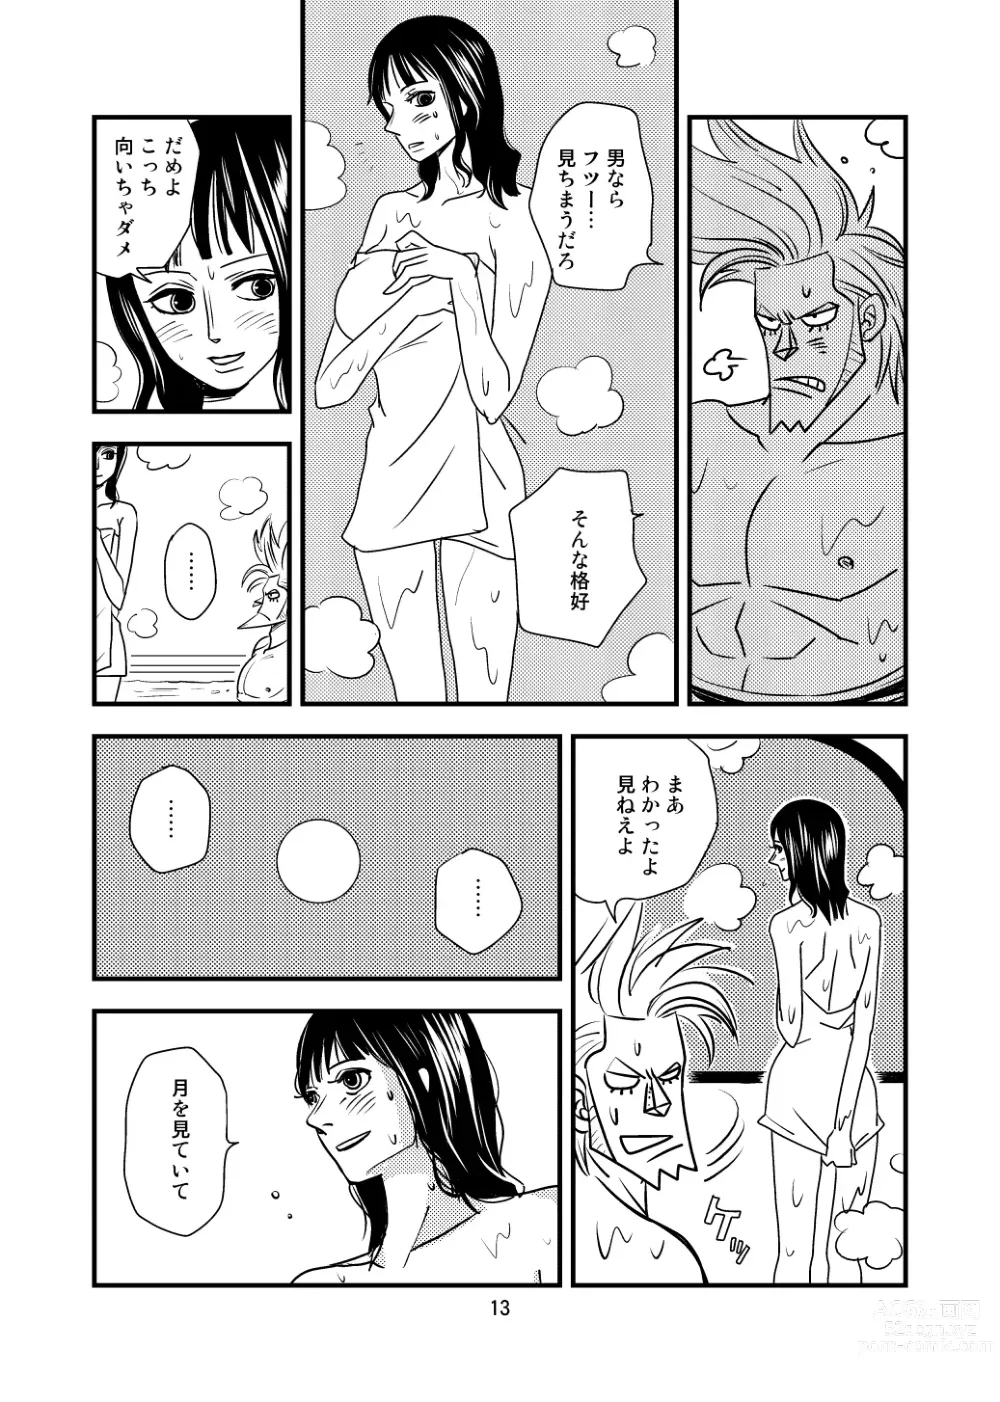 Page 11 of doujinshi Kura-Kura